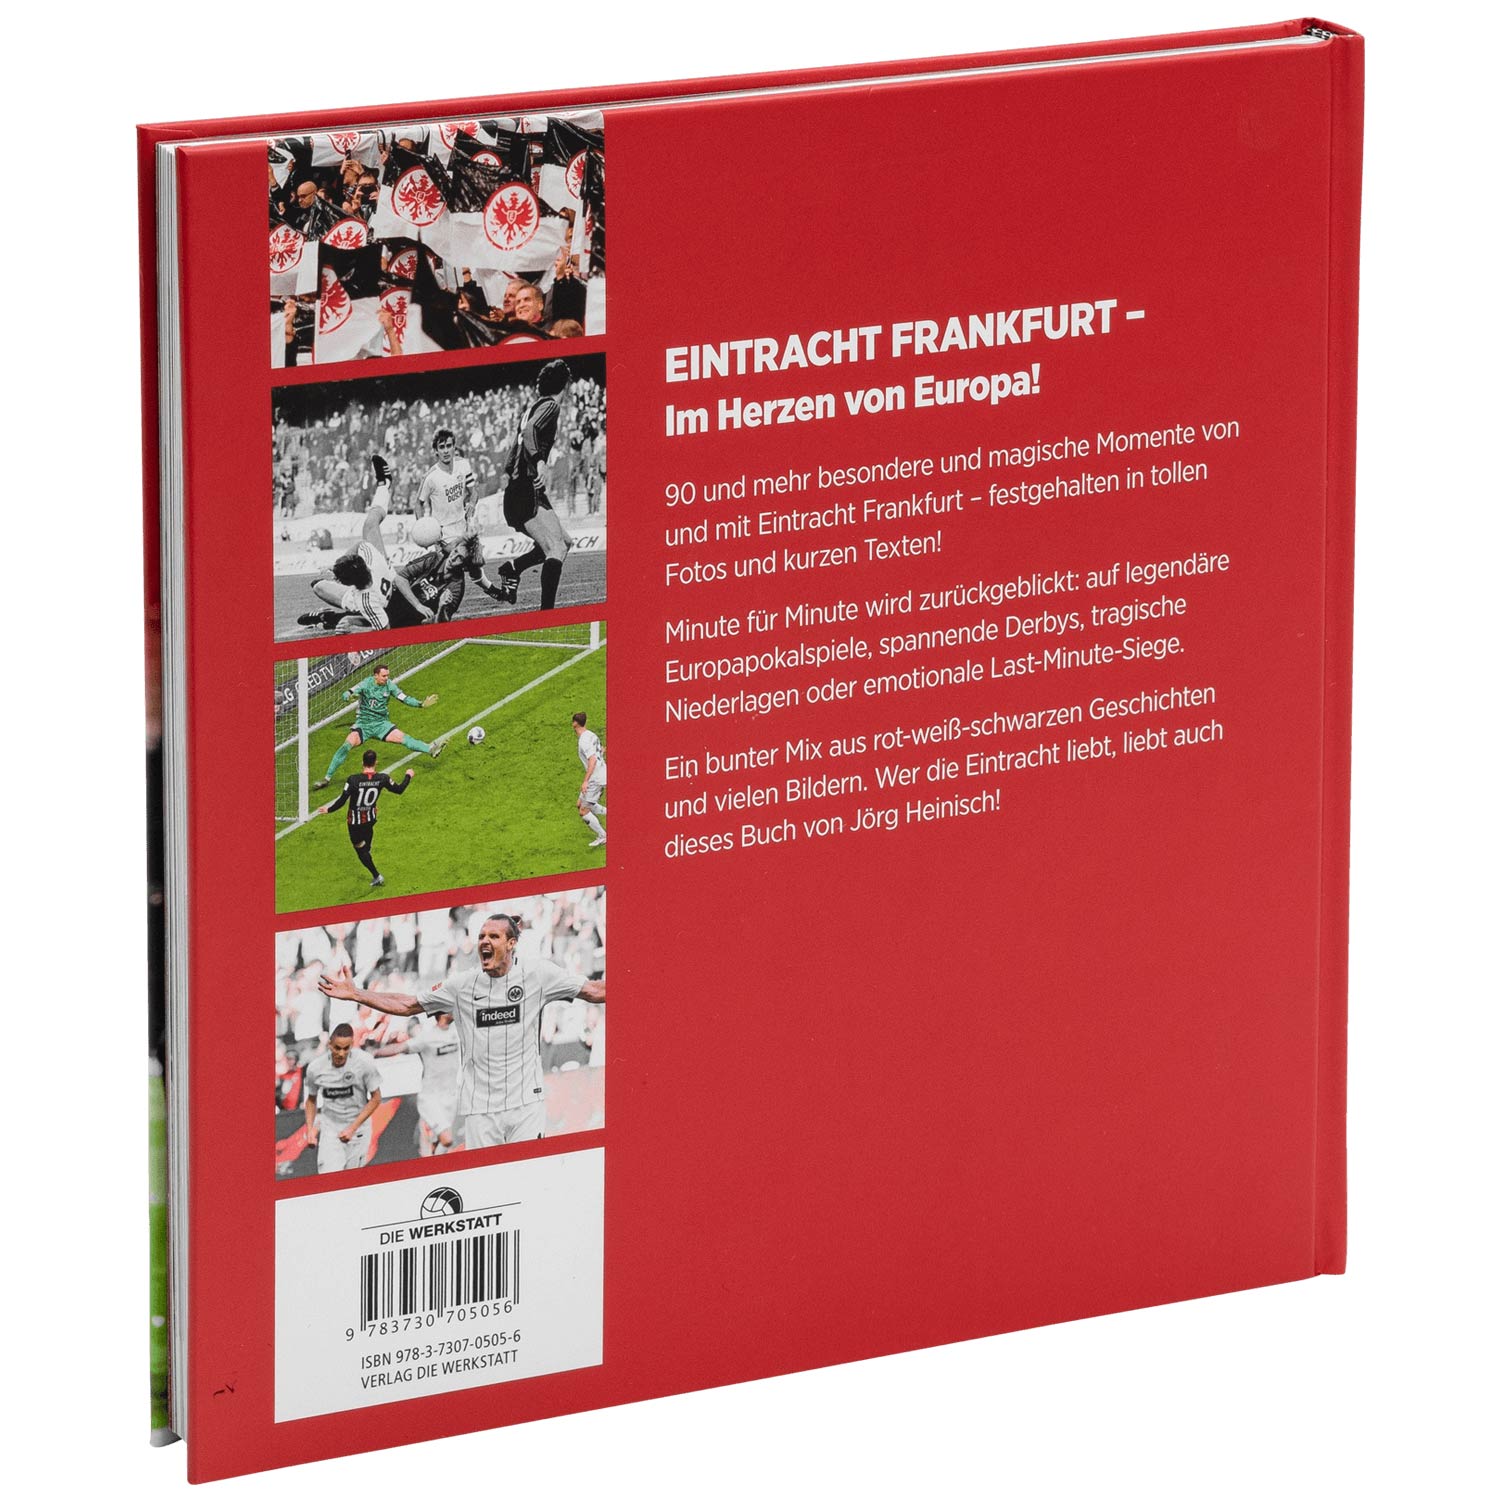 Buch 90 Minuten Eintracht Frankfurt